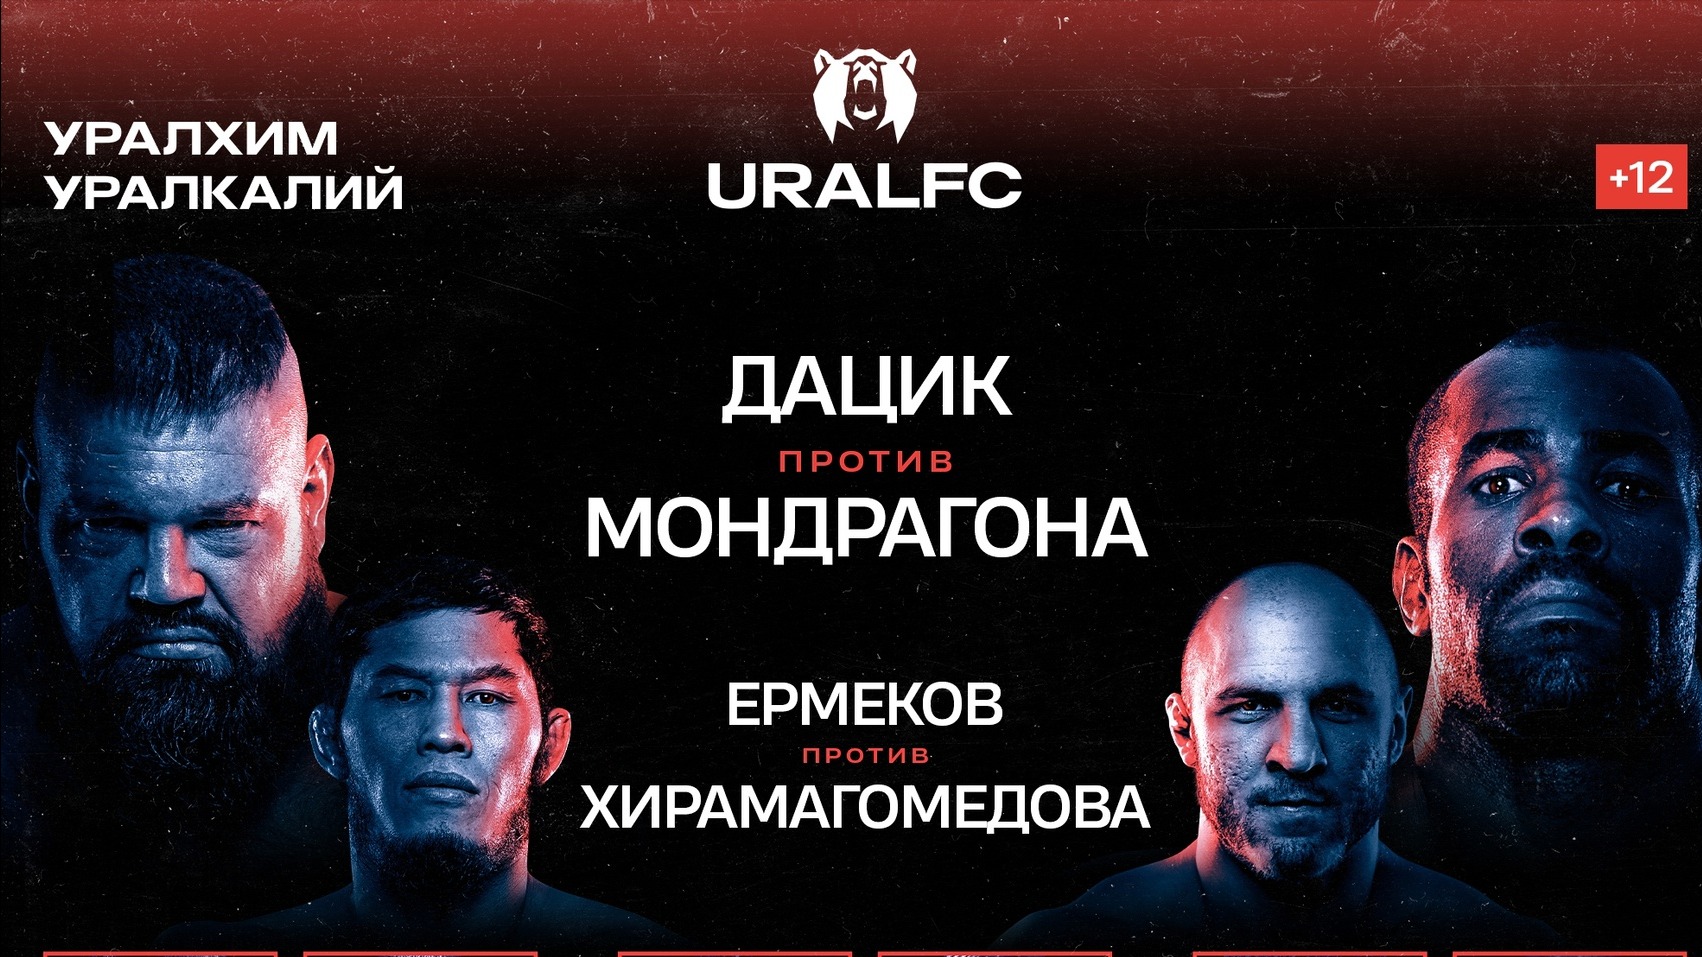 Прямая трансляция Ural FC 2: как смотреть турнир онлайн 25 марта